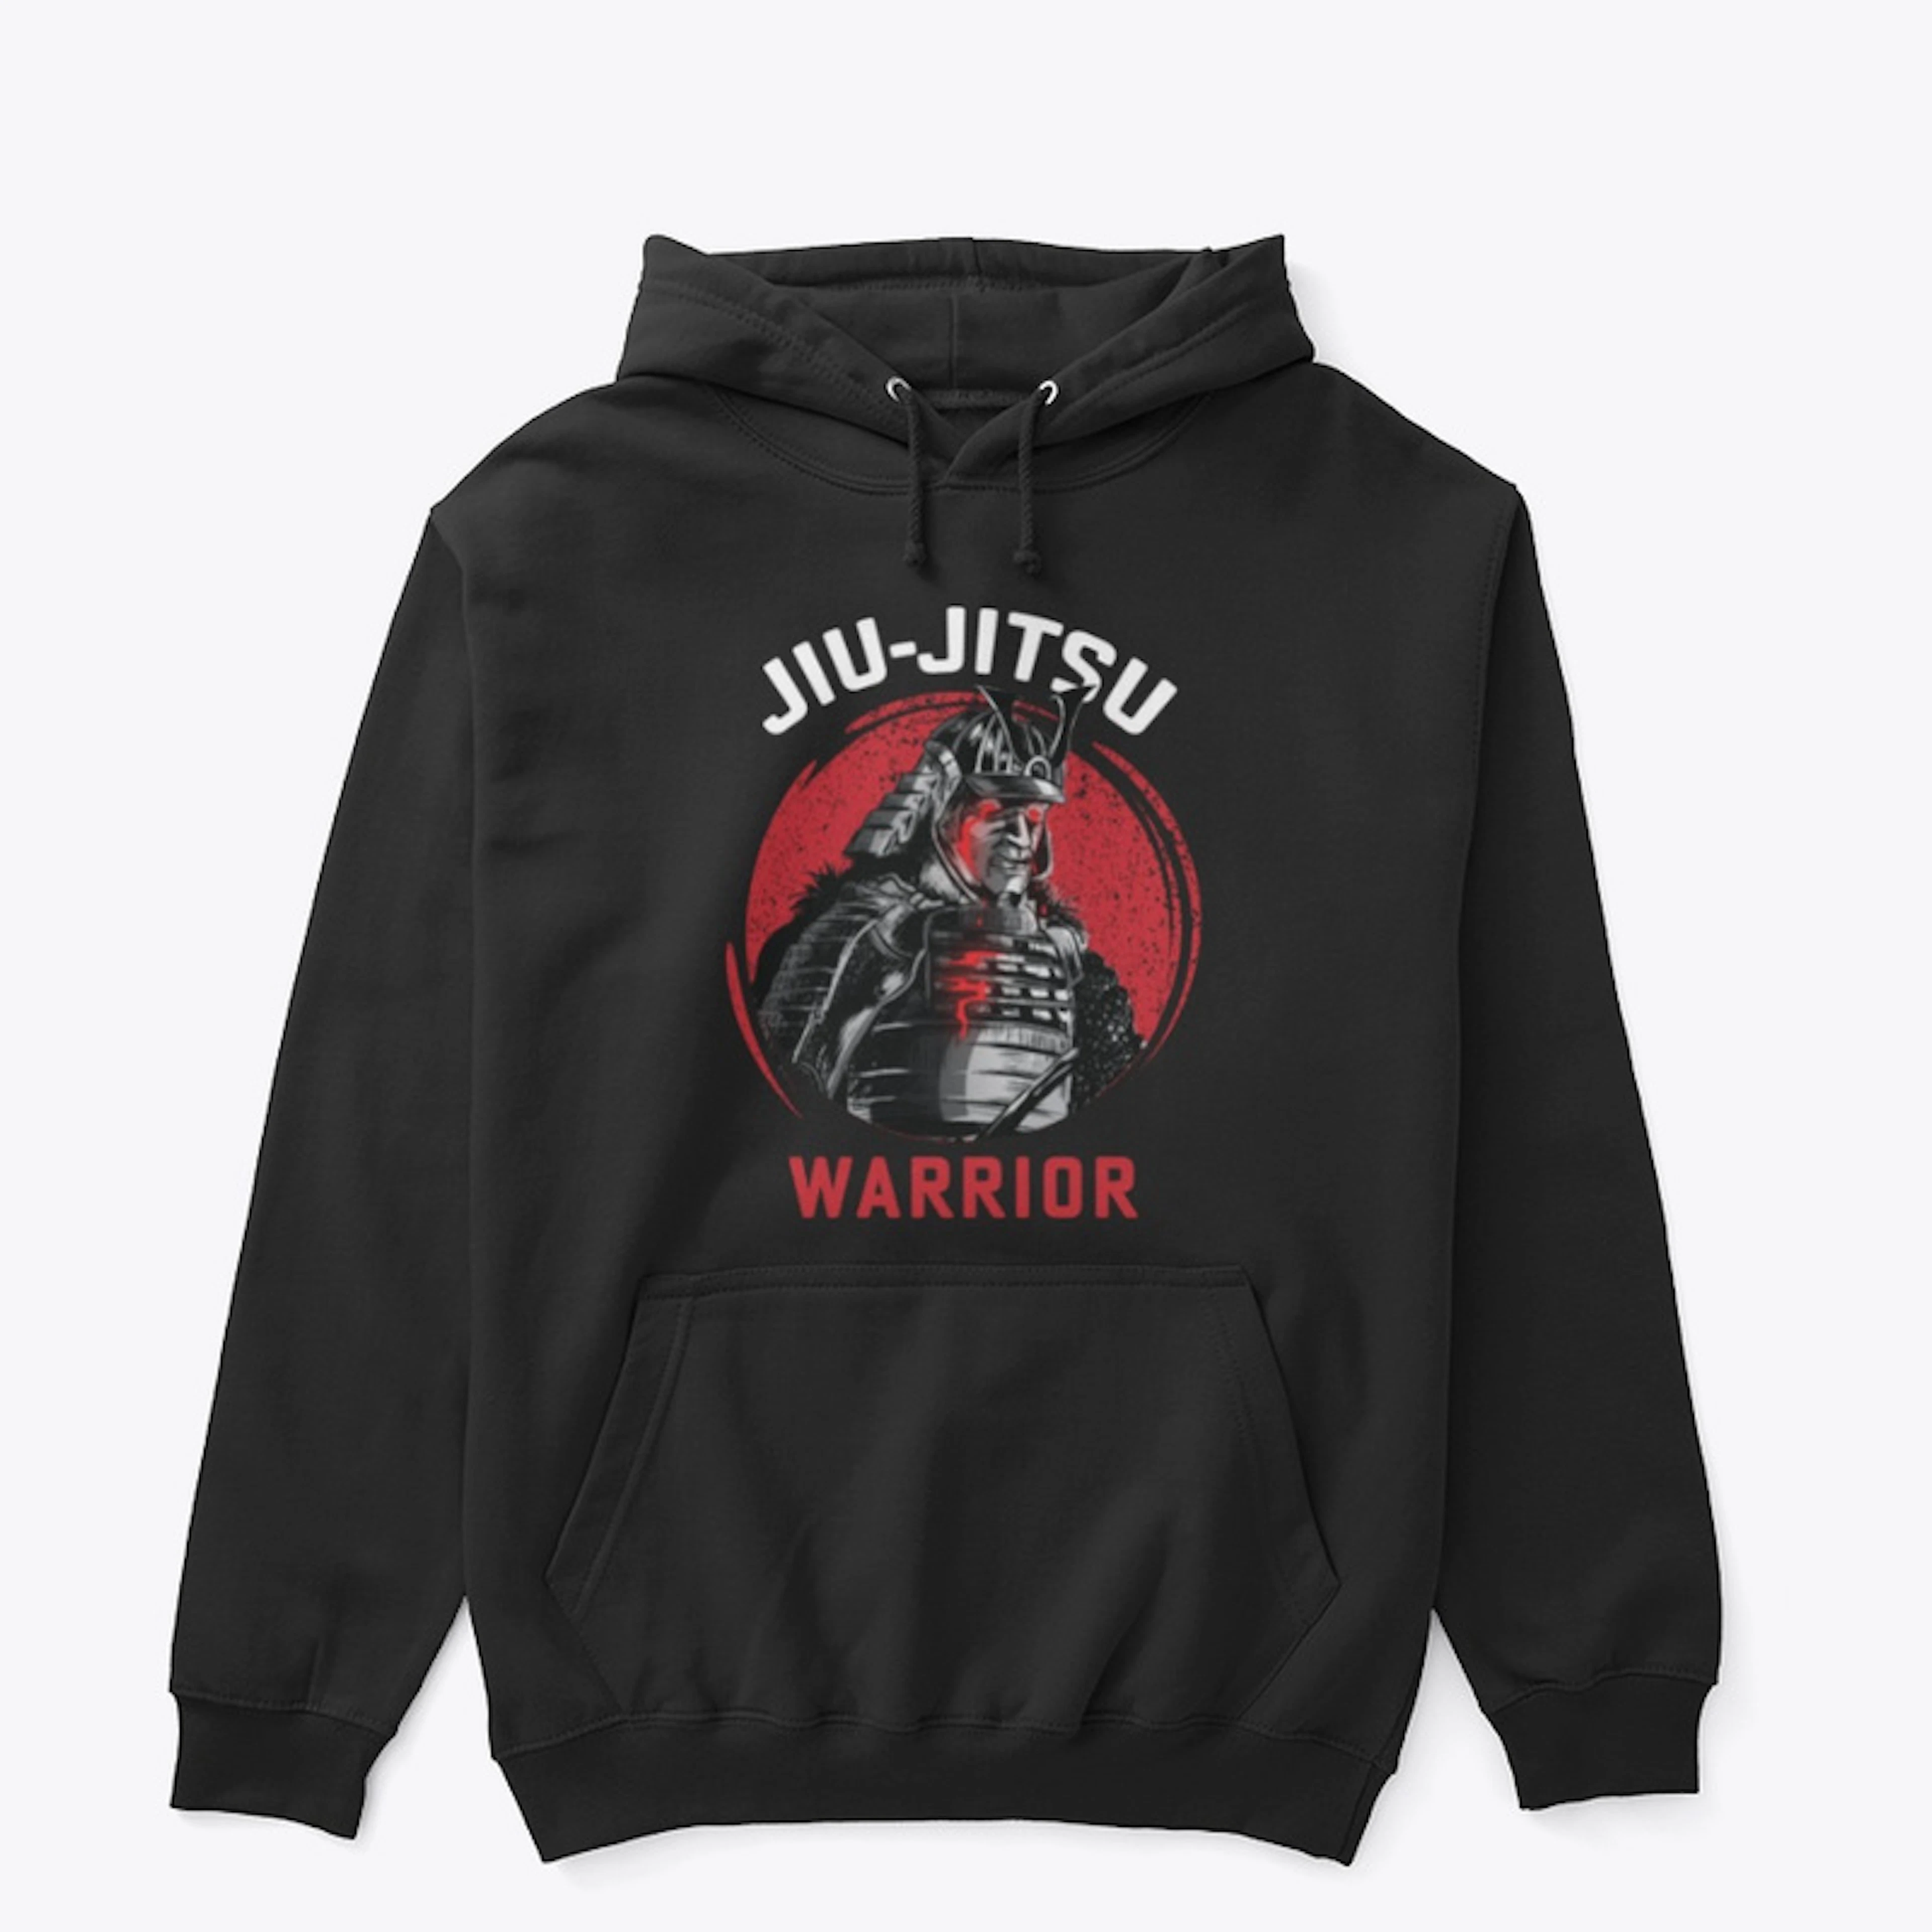 Jiu Jitsu warrior